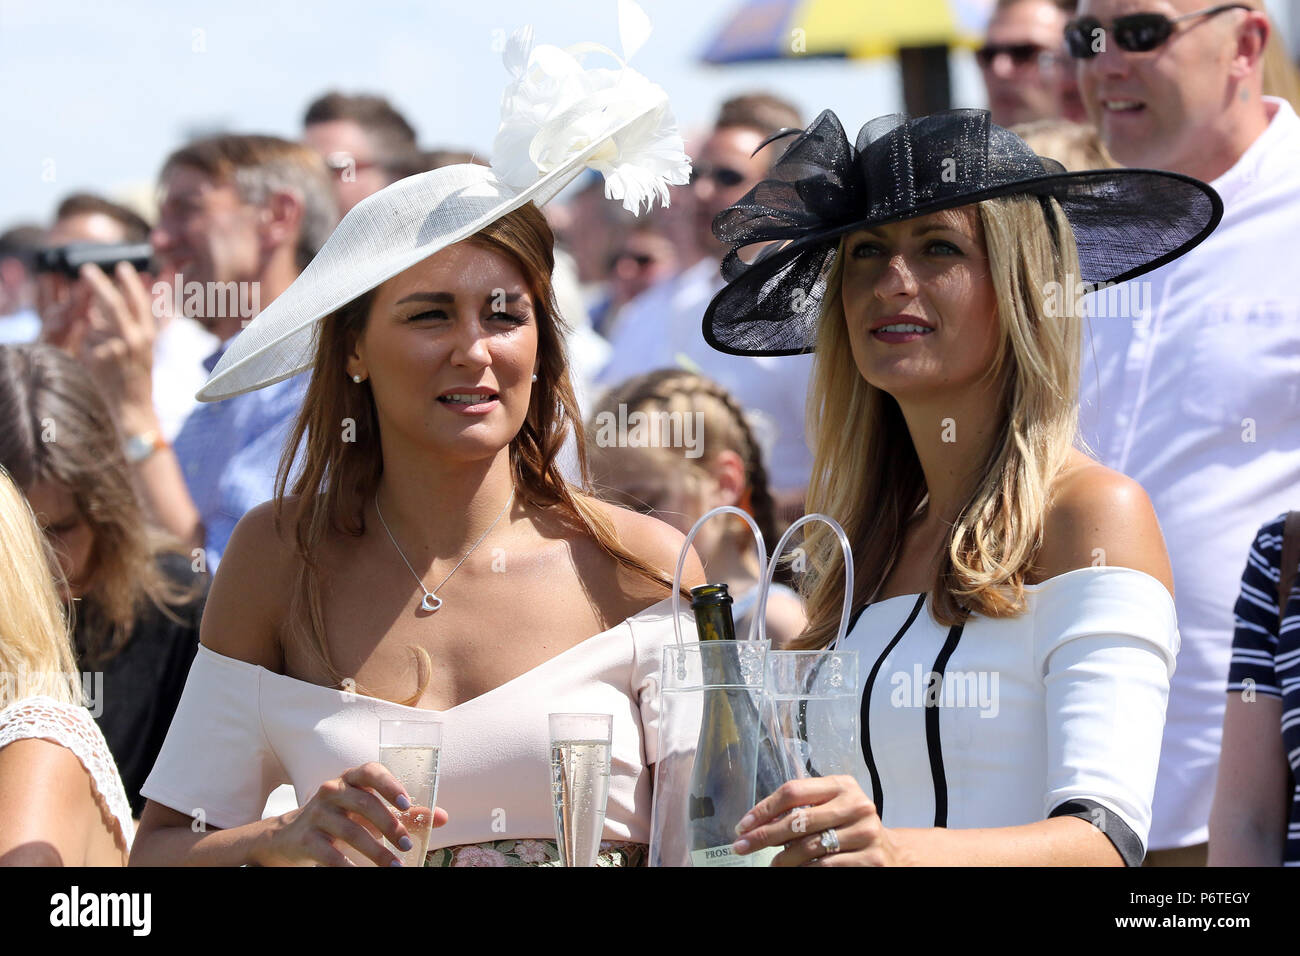 Sandown, Fashion, women at the racecourse Stock Photo